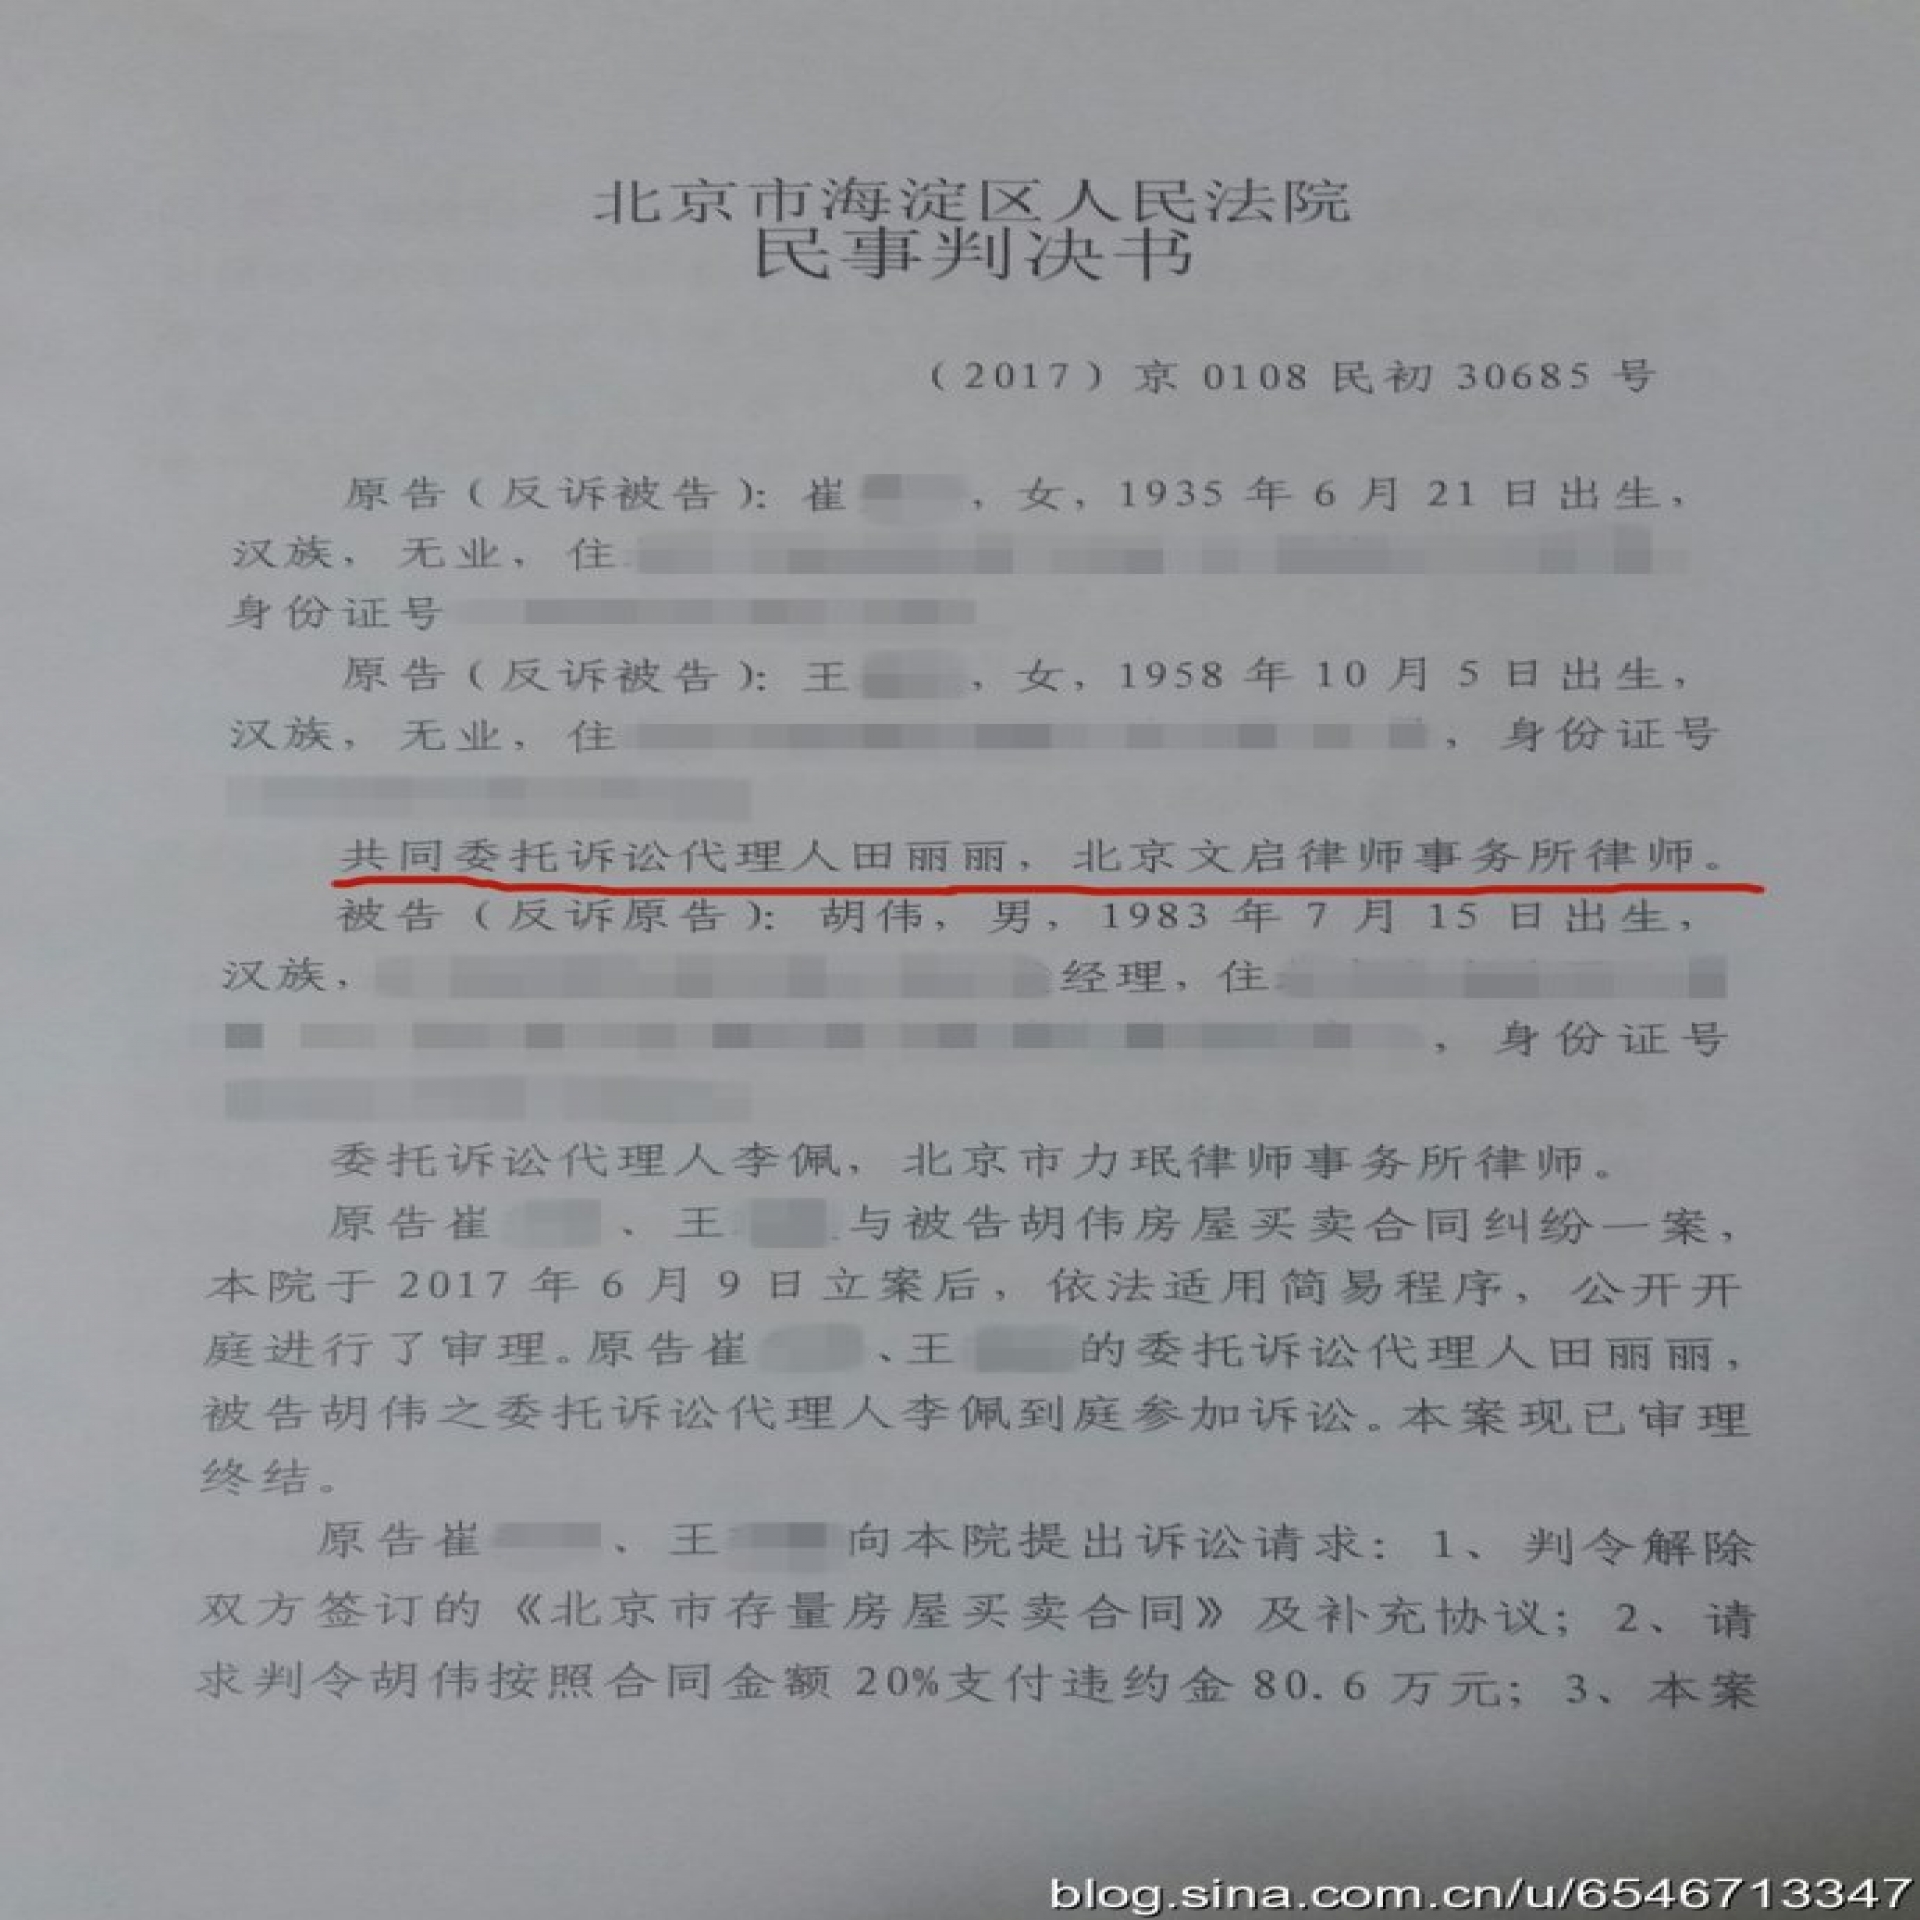 北京离婚律师代理崔某等人房屋买卖合同纠纷一案胜诉